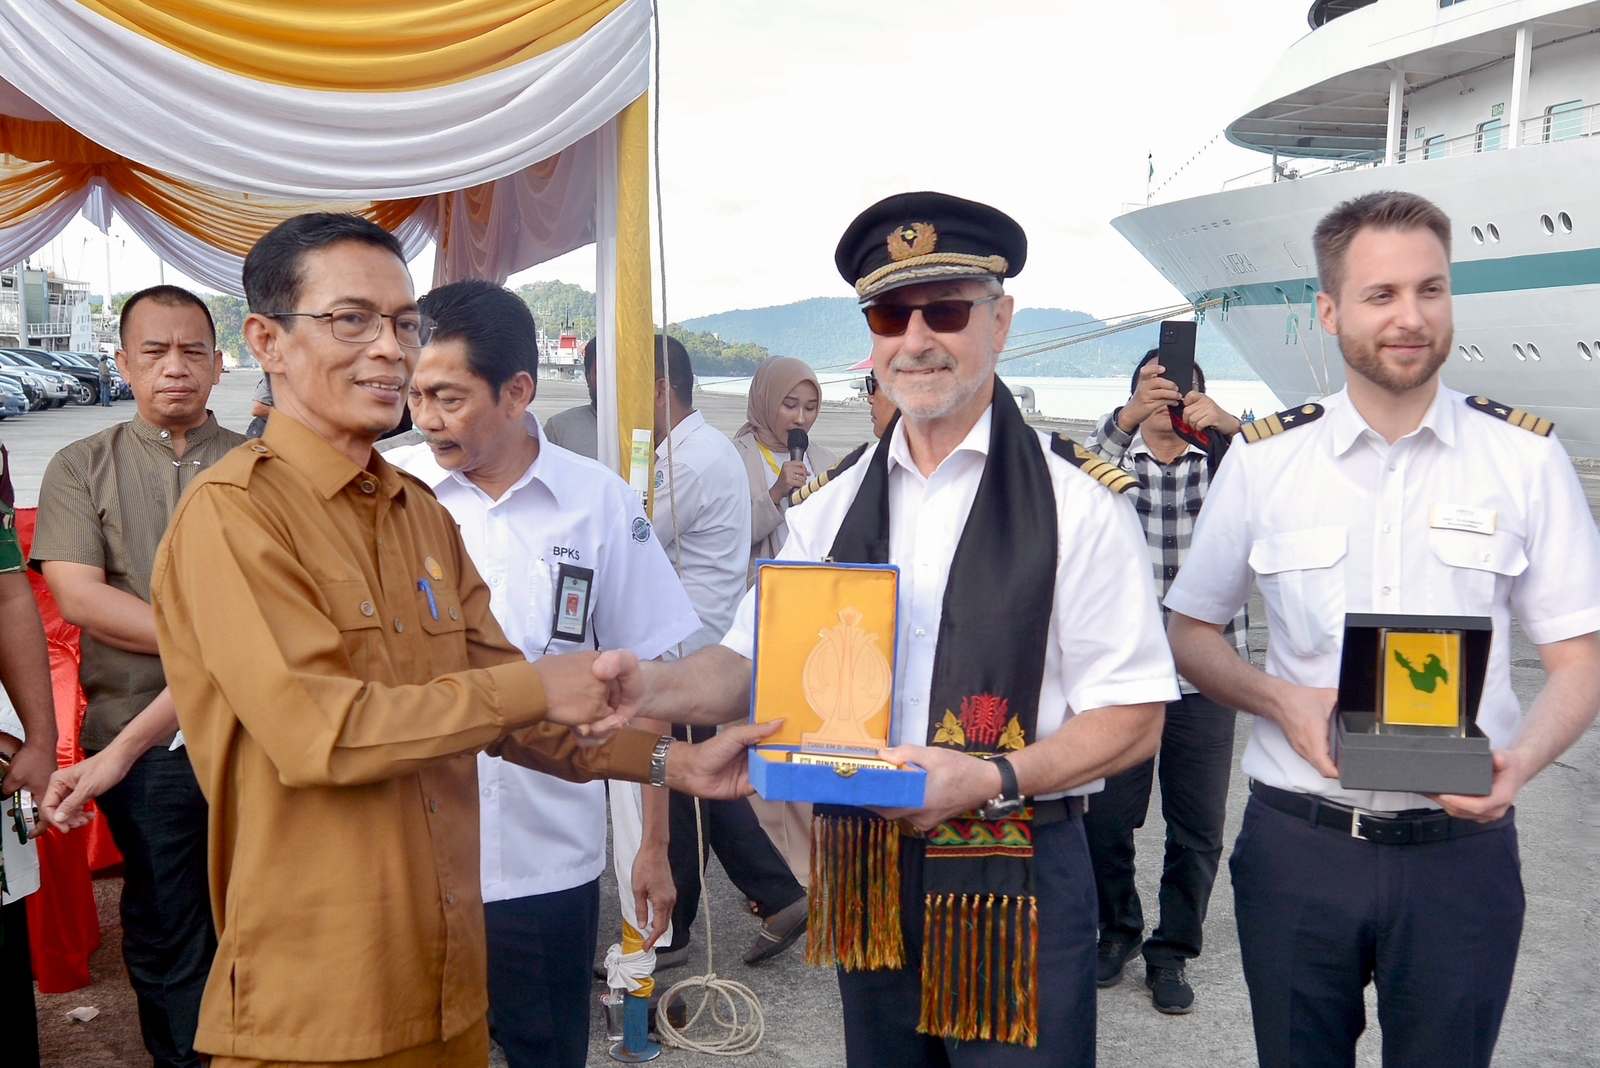 Plt Kepala Dinas Pariwisata Sabang Faisal Azwar, menyerahkan cendera mata kepada kapten kapal MS Amera. (Dok. Humas Kota Sabang)